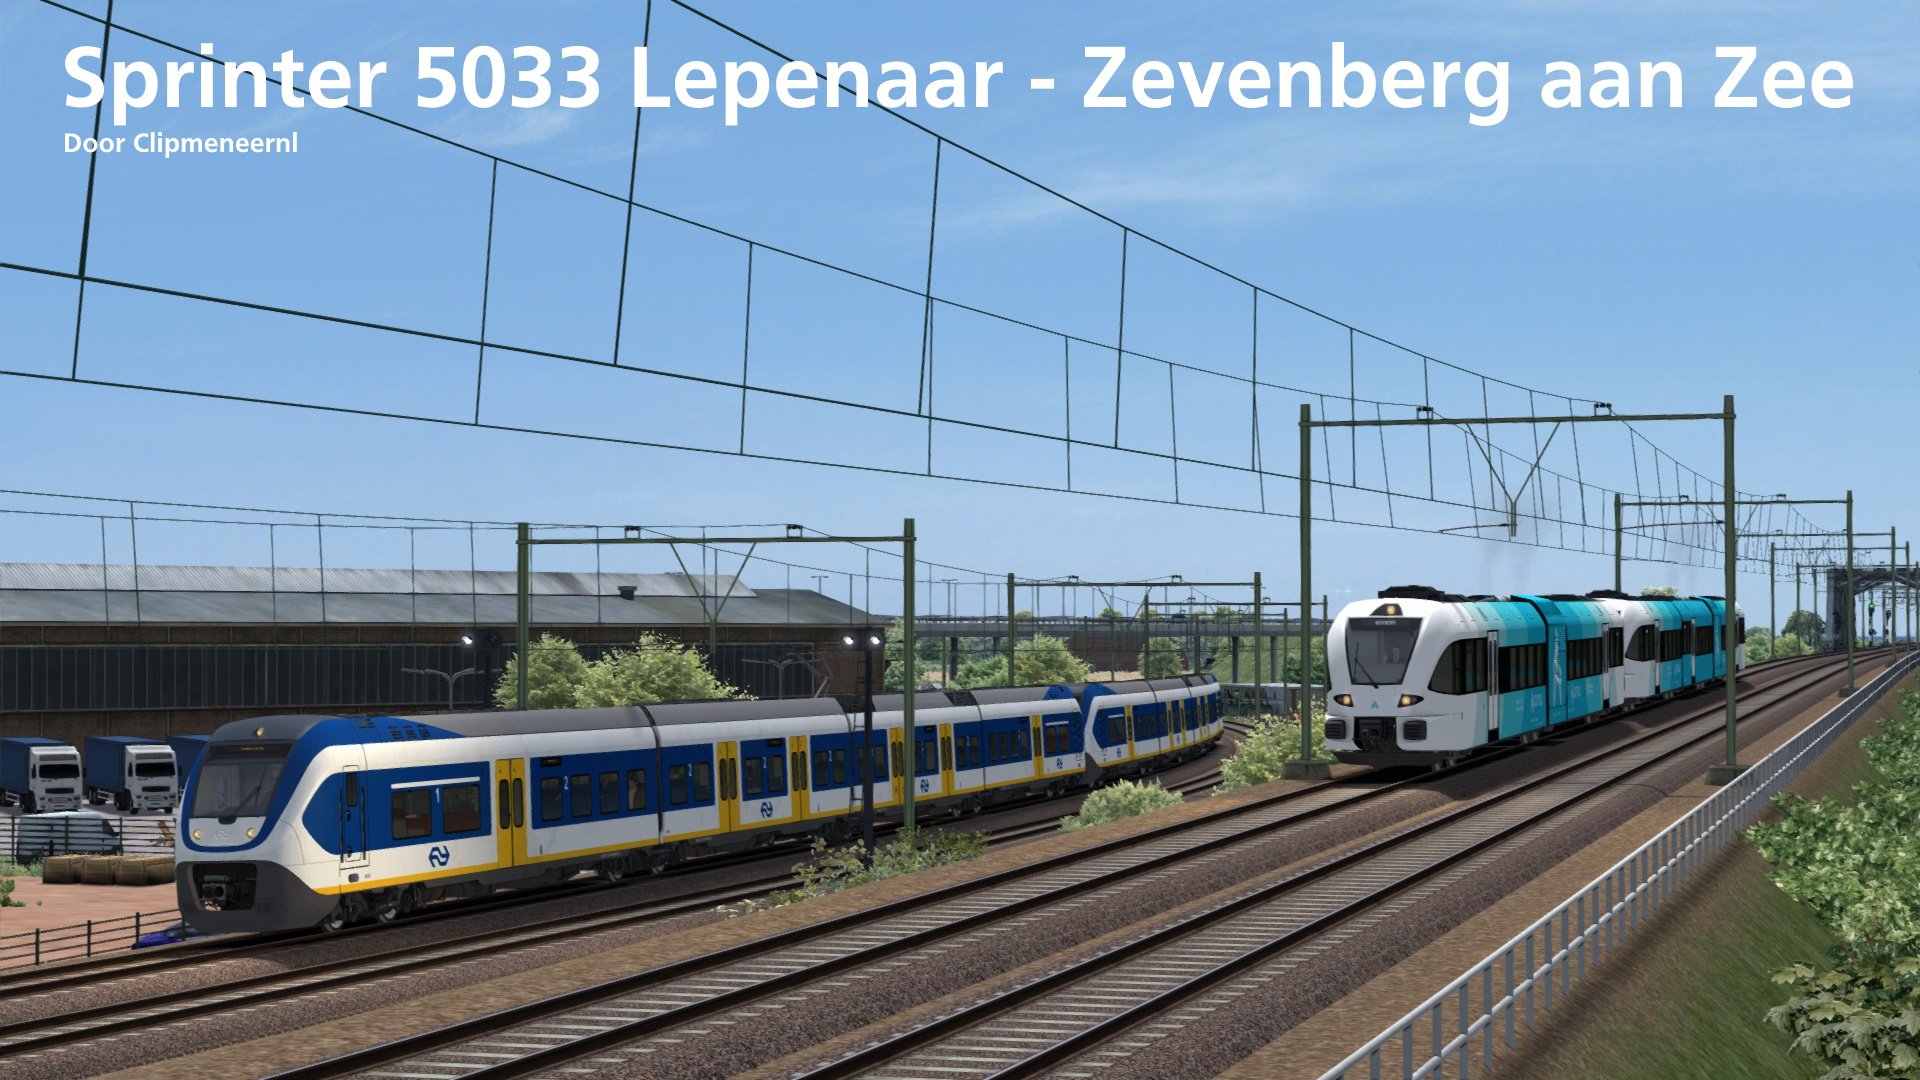 More information about "[CMNL V2] Sprinter 5033 Lepenaar - Zevenberg aan Zee"